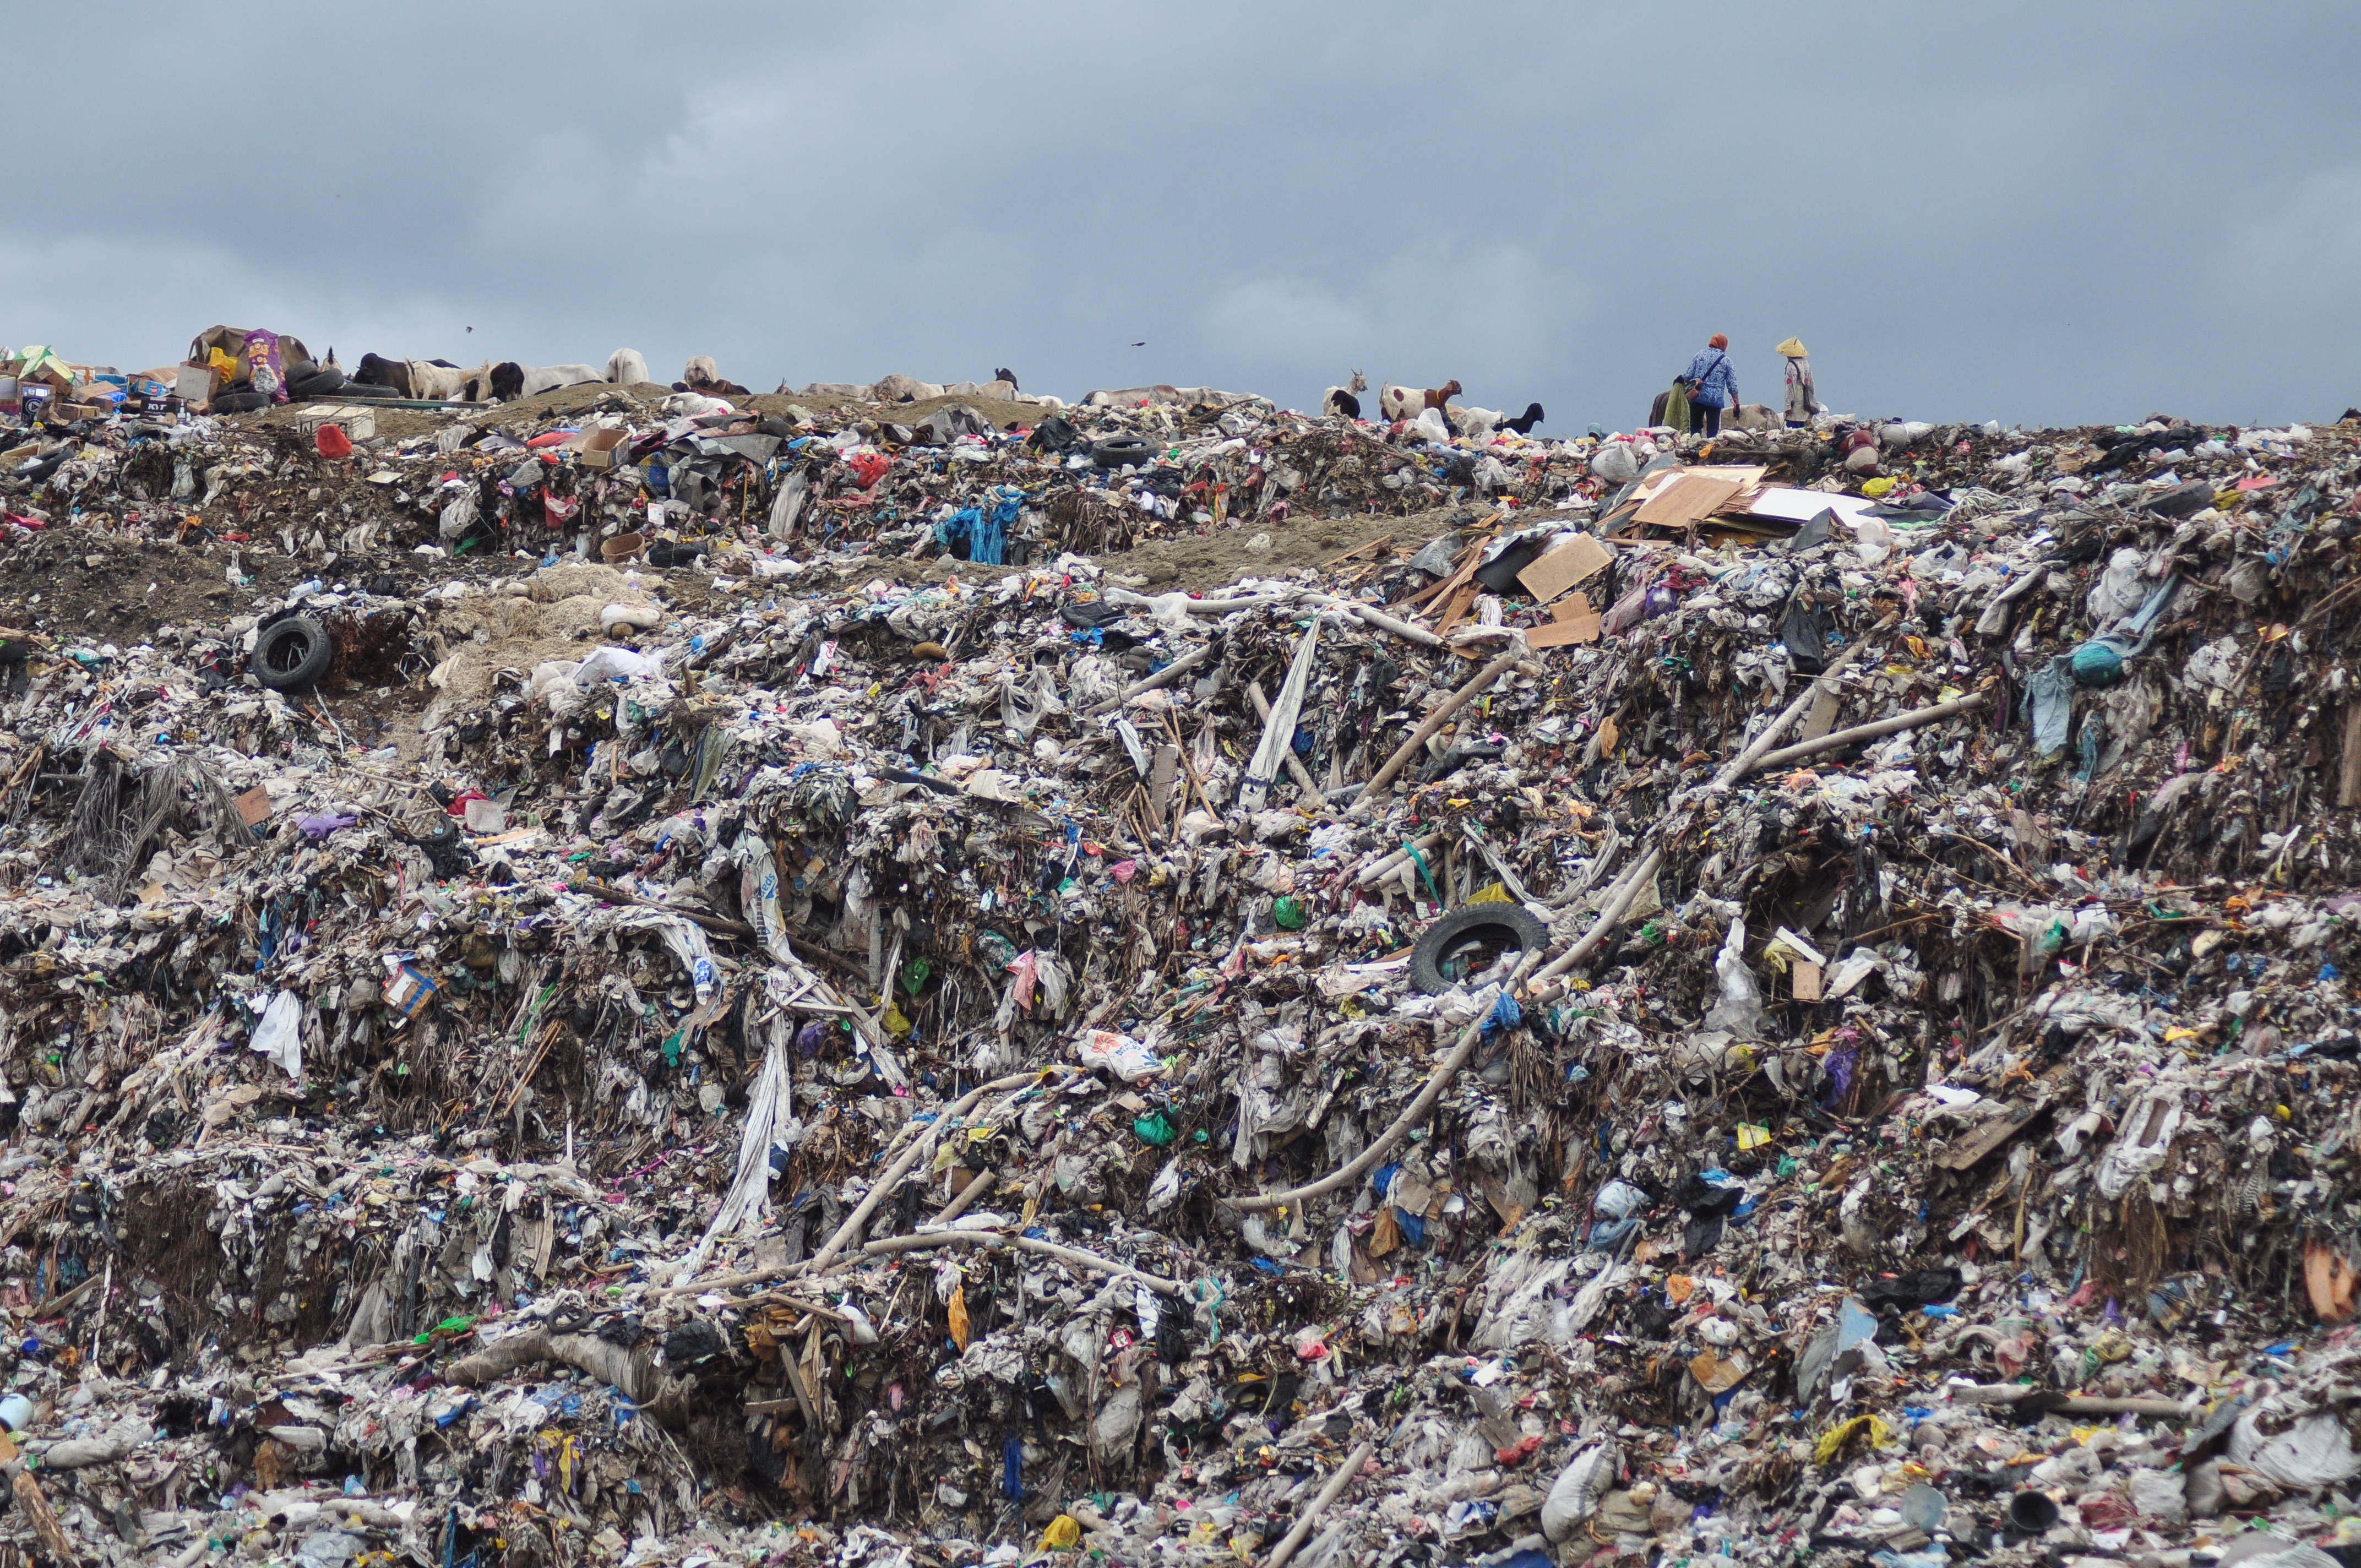 2040-re 1,3 milliárd tonna műanyagszemetet termelünk, ha nem cselekszünk